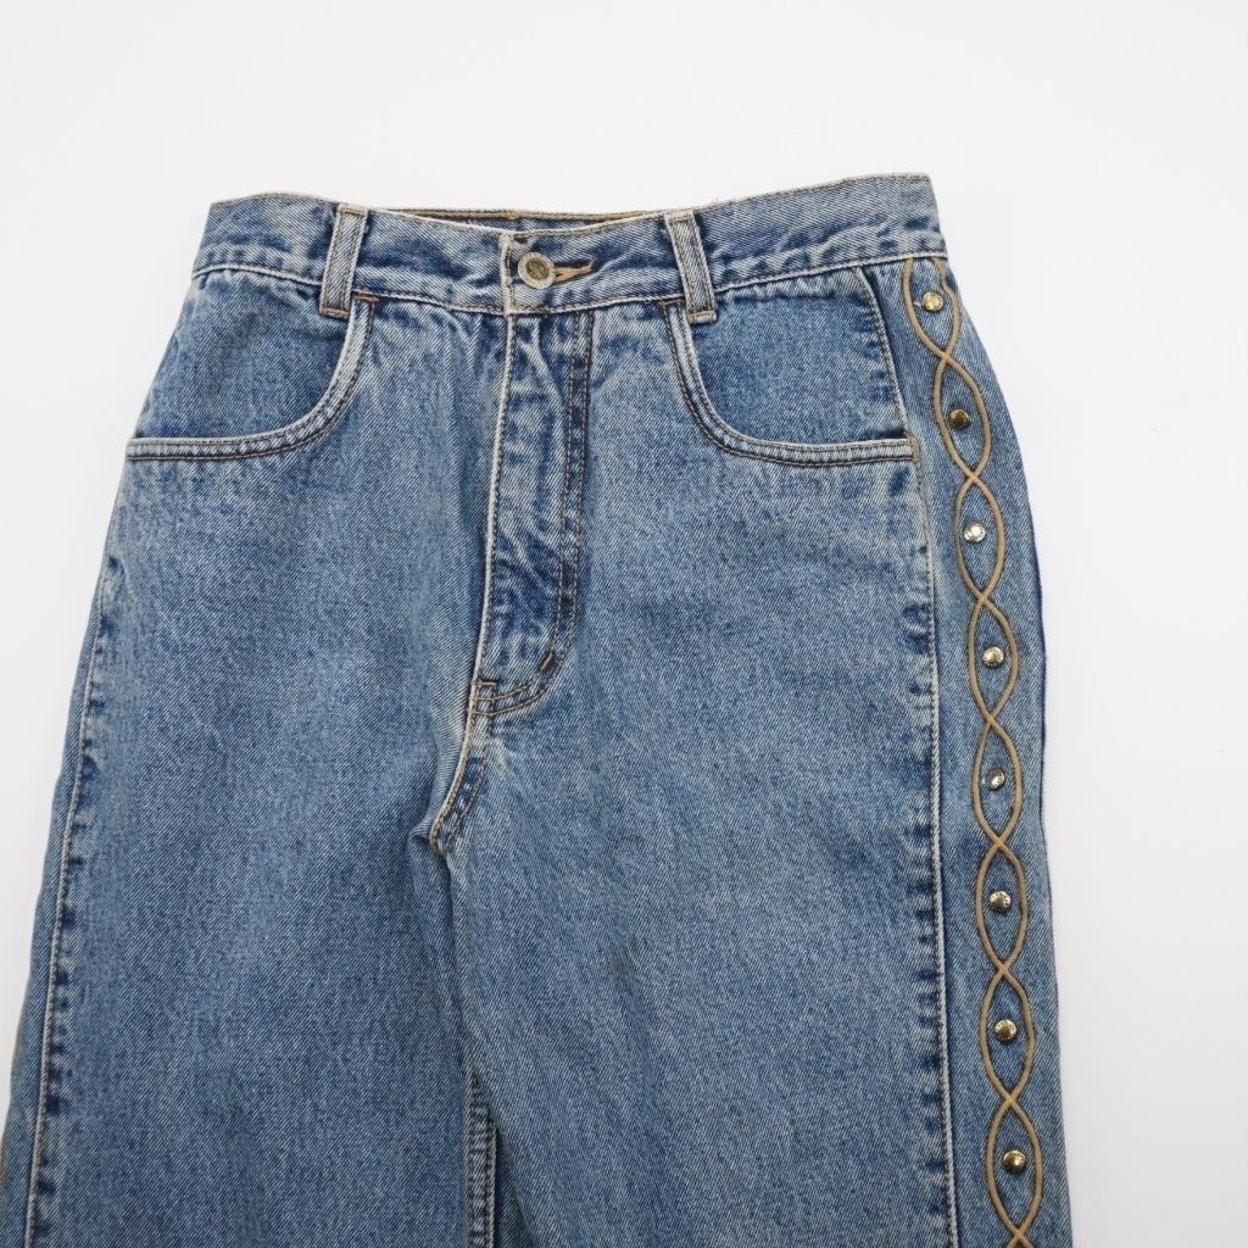 lawman jeans for sale